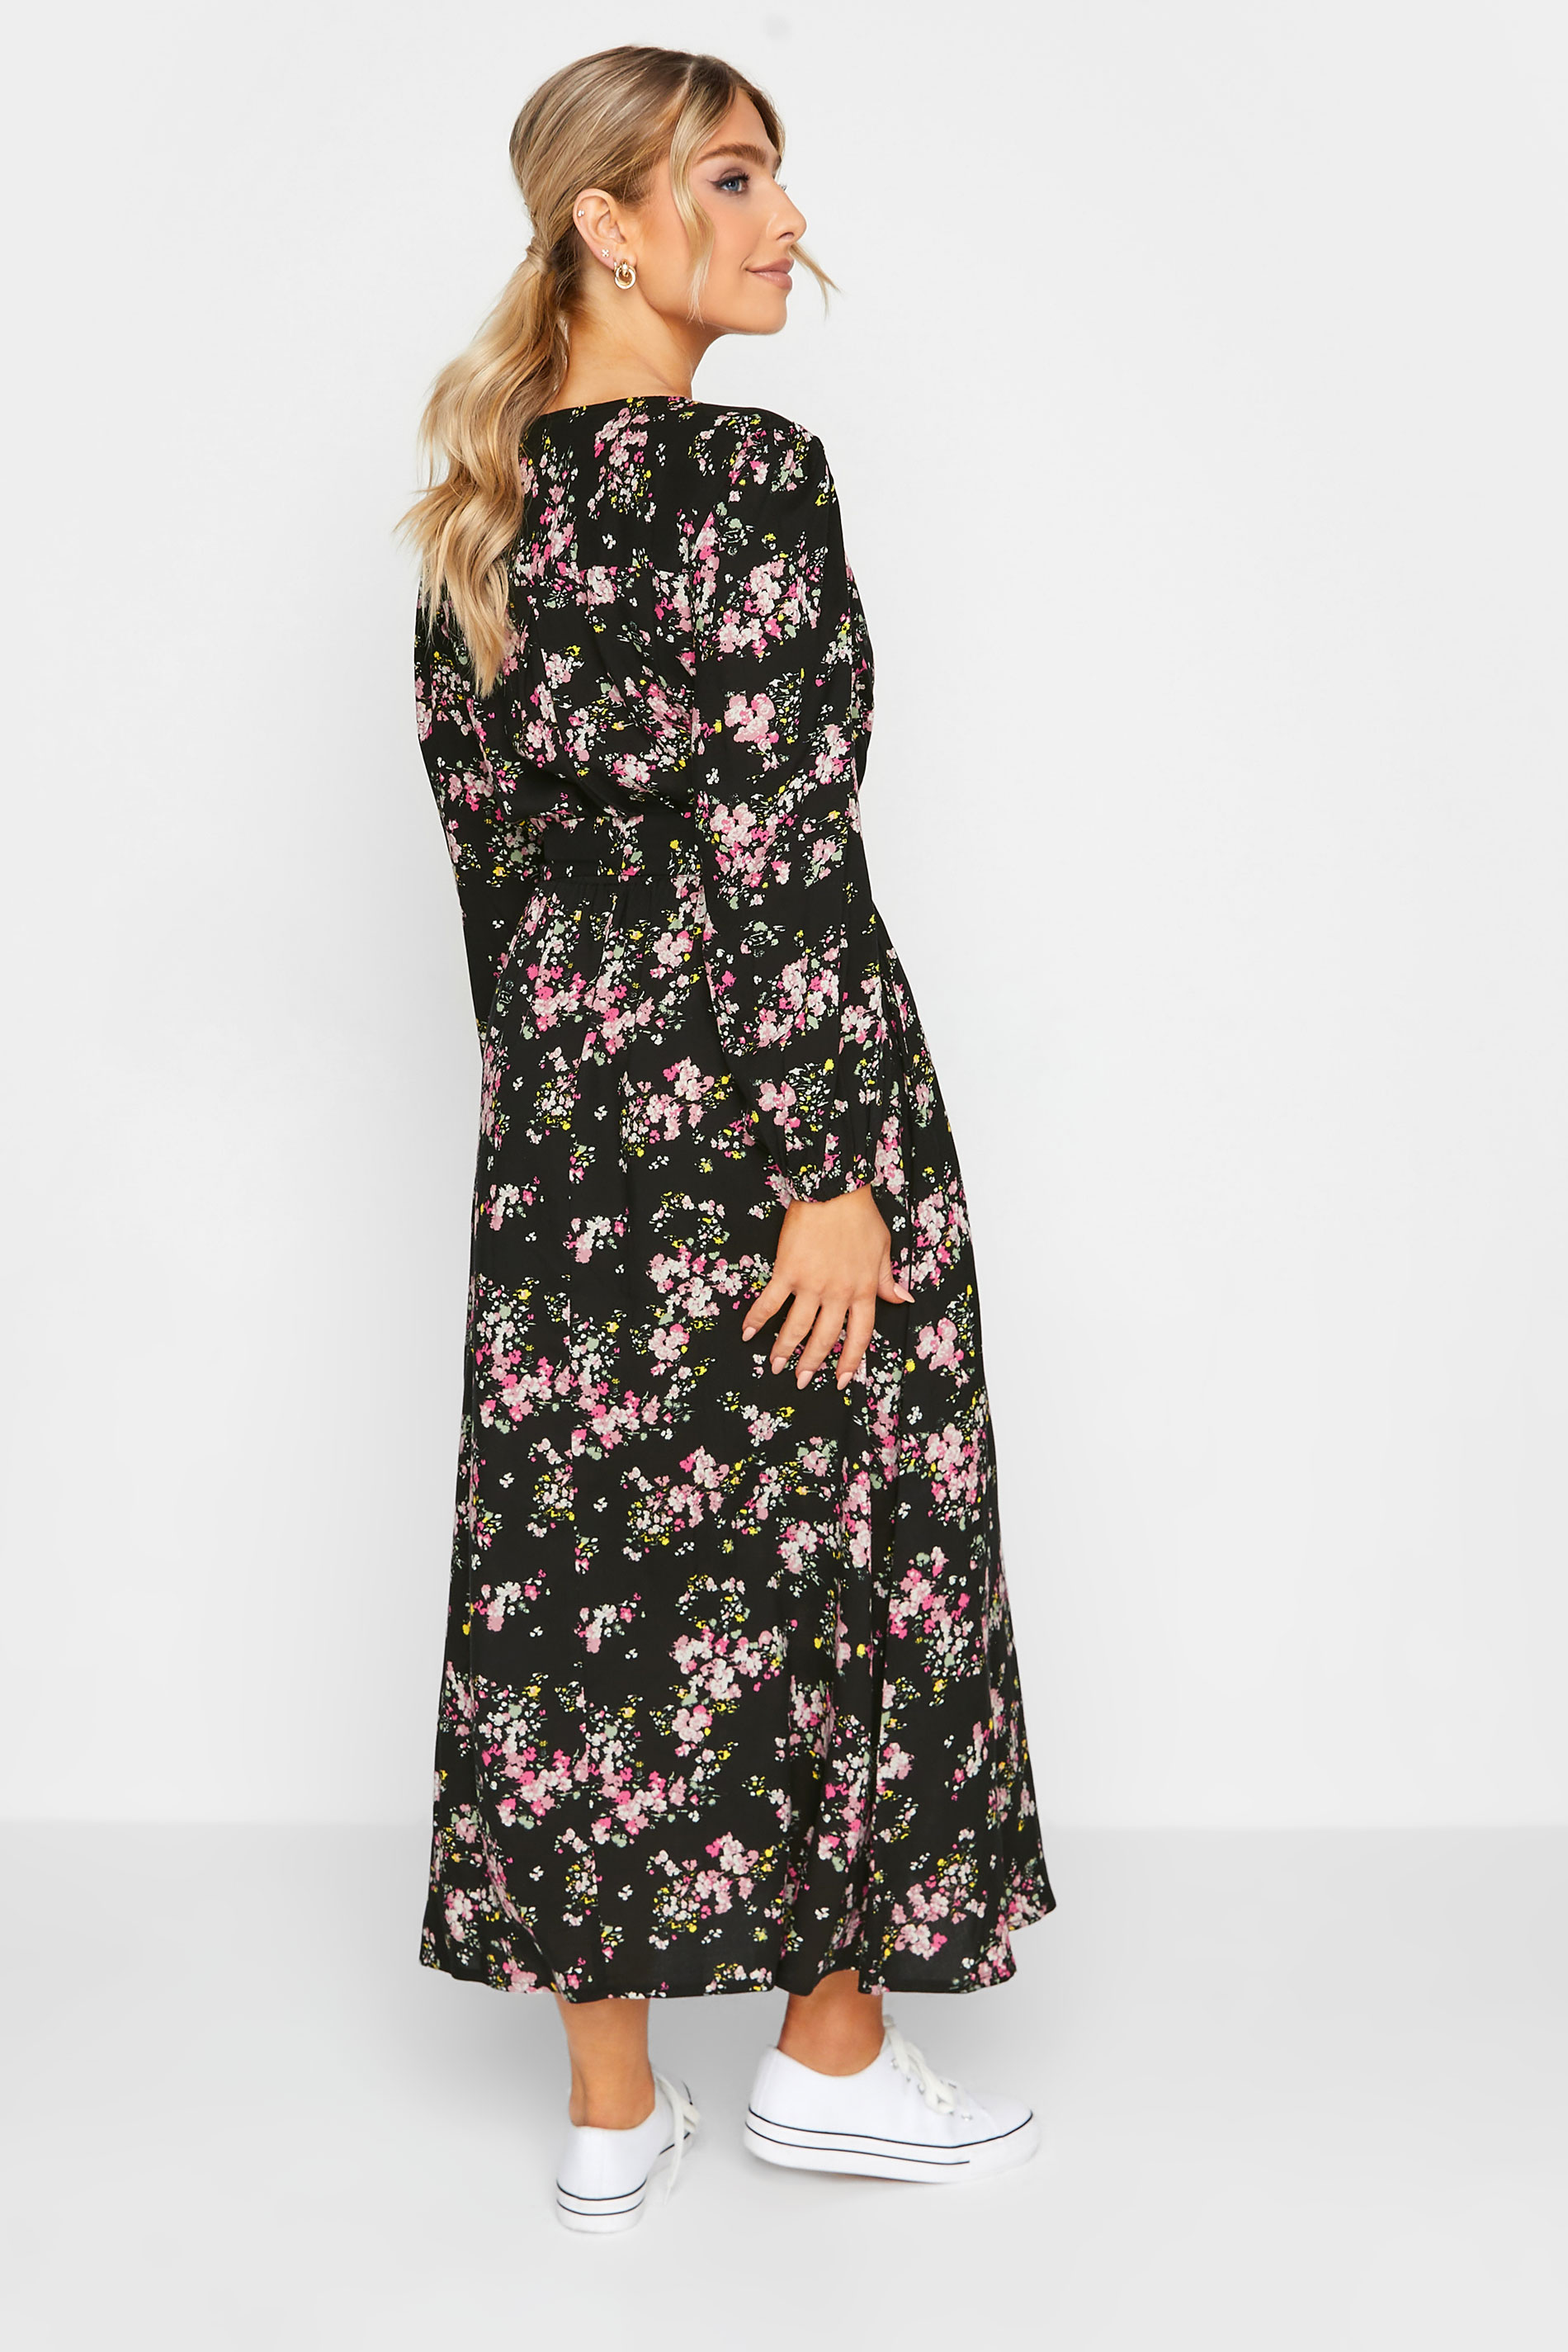 M&Co Black & Pink Floral Print Wrap Front Dress | M&Co  3